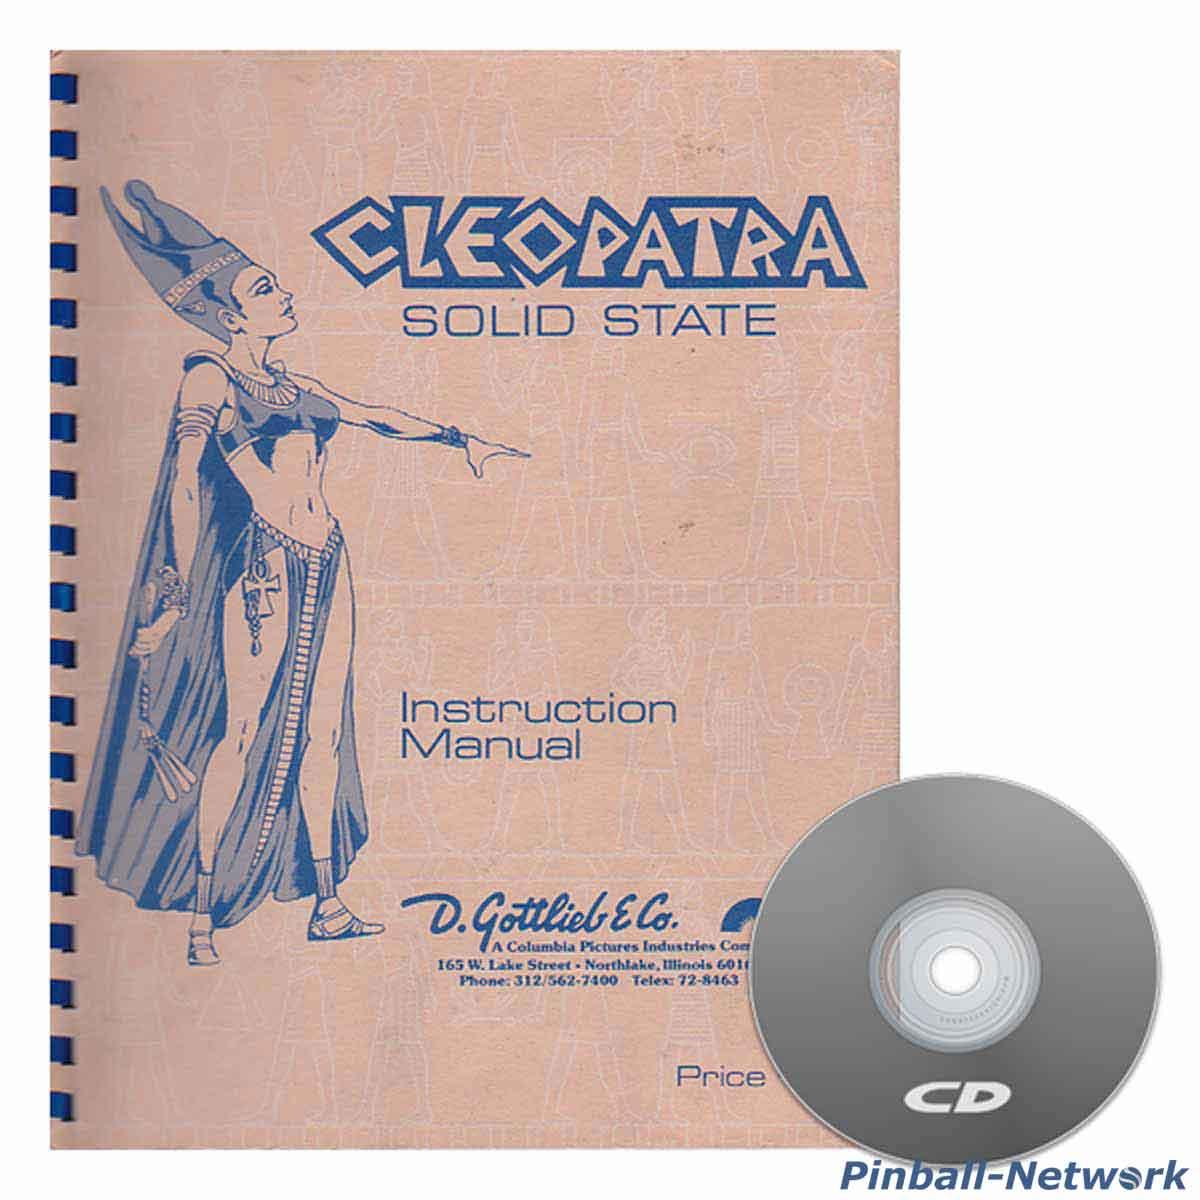 Cleopatra Instruction Manual